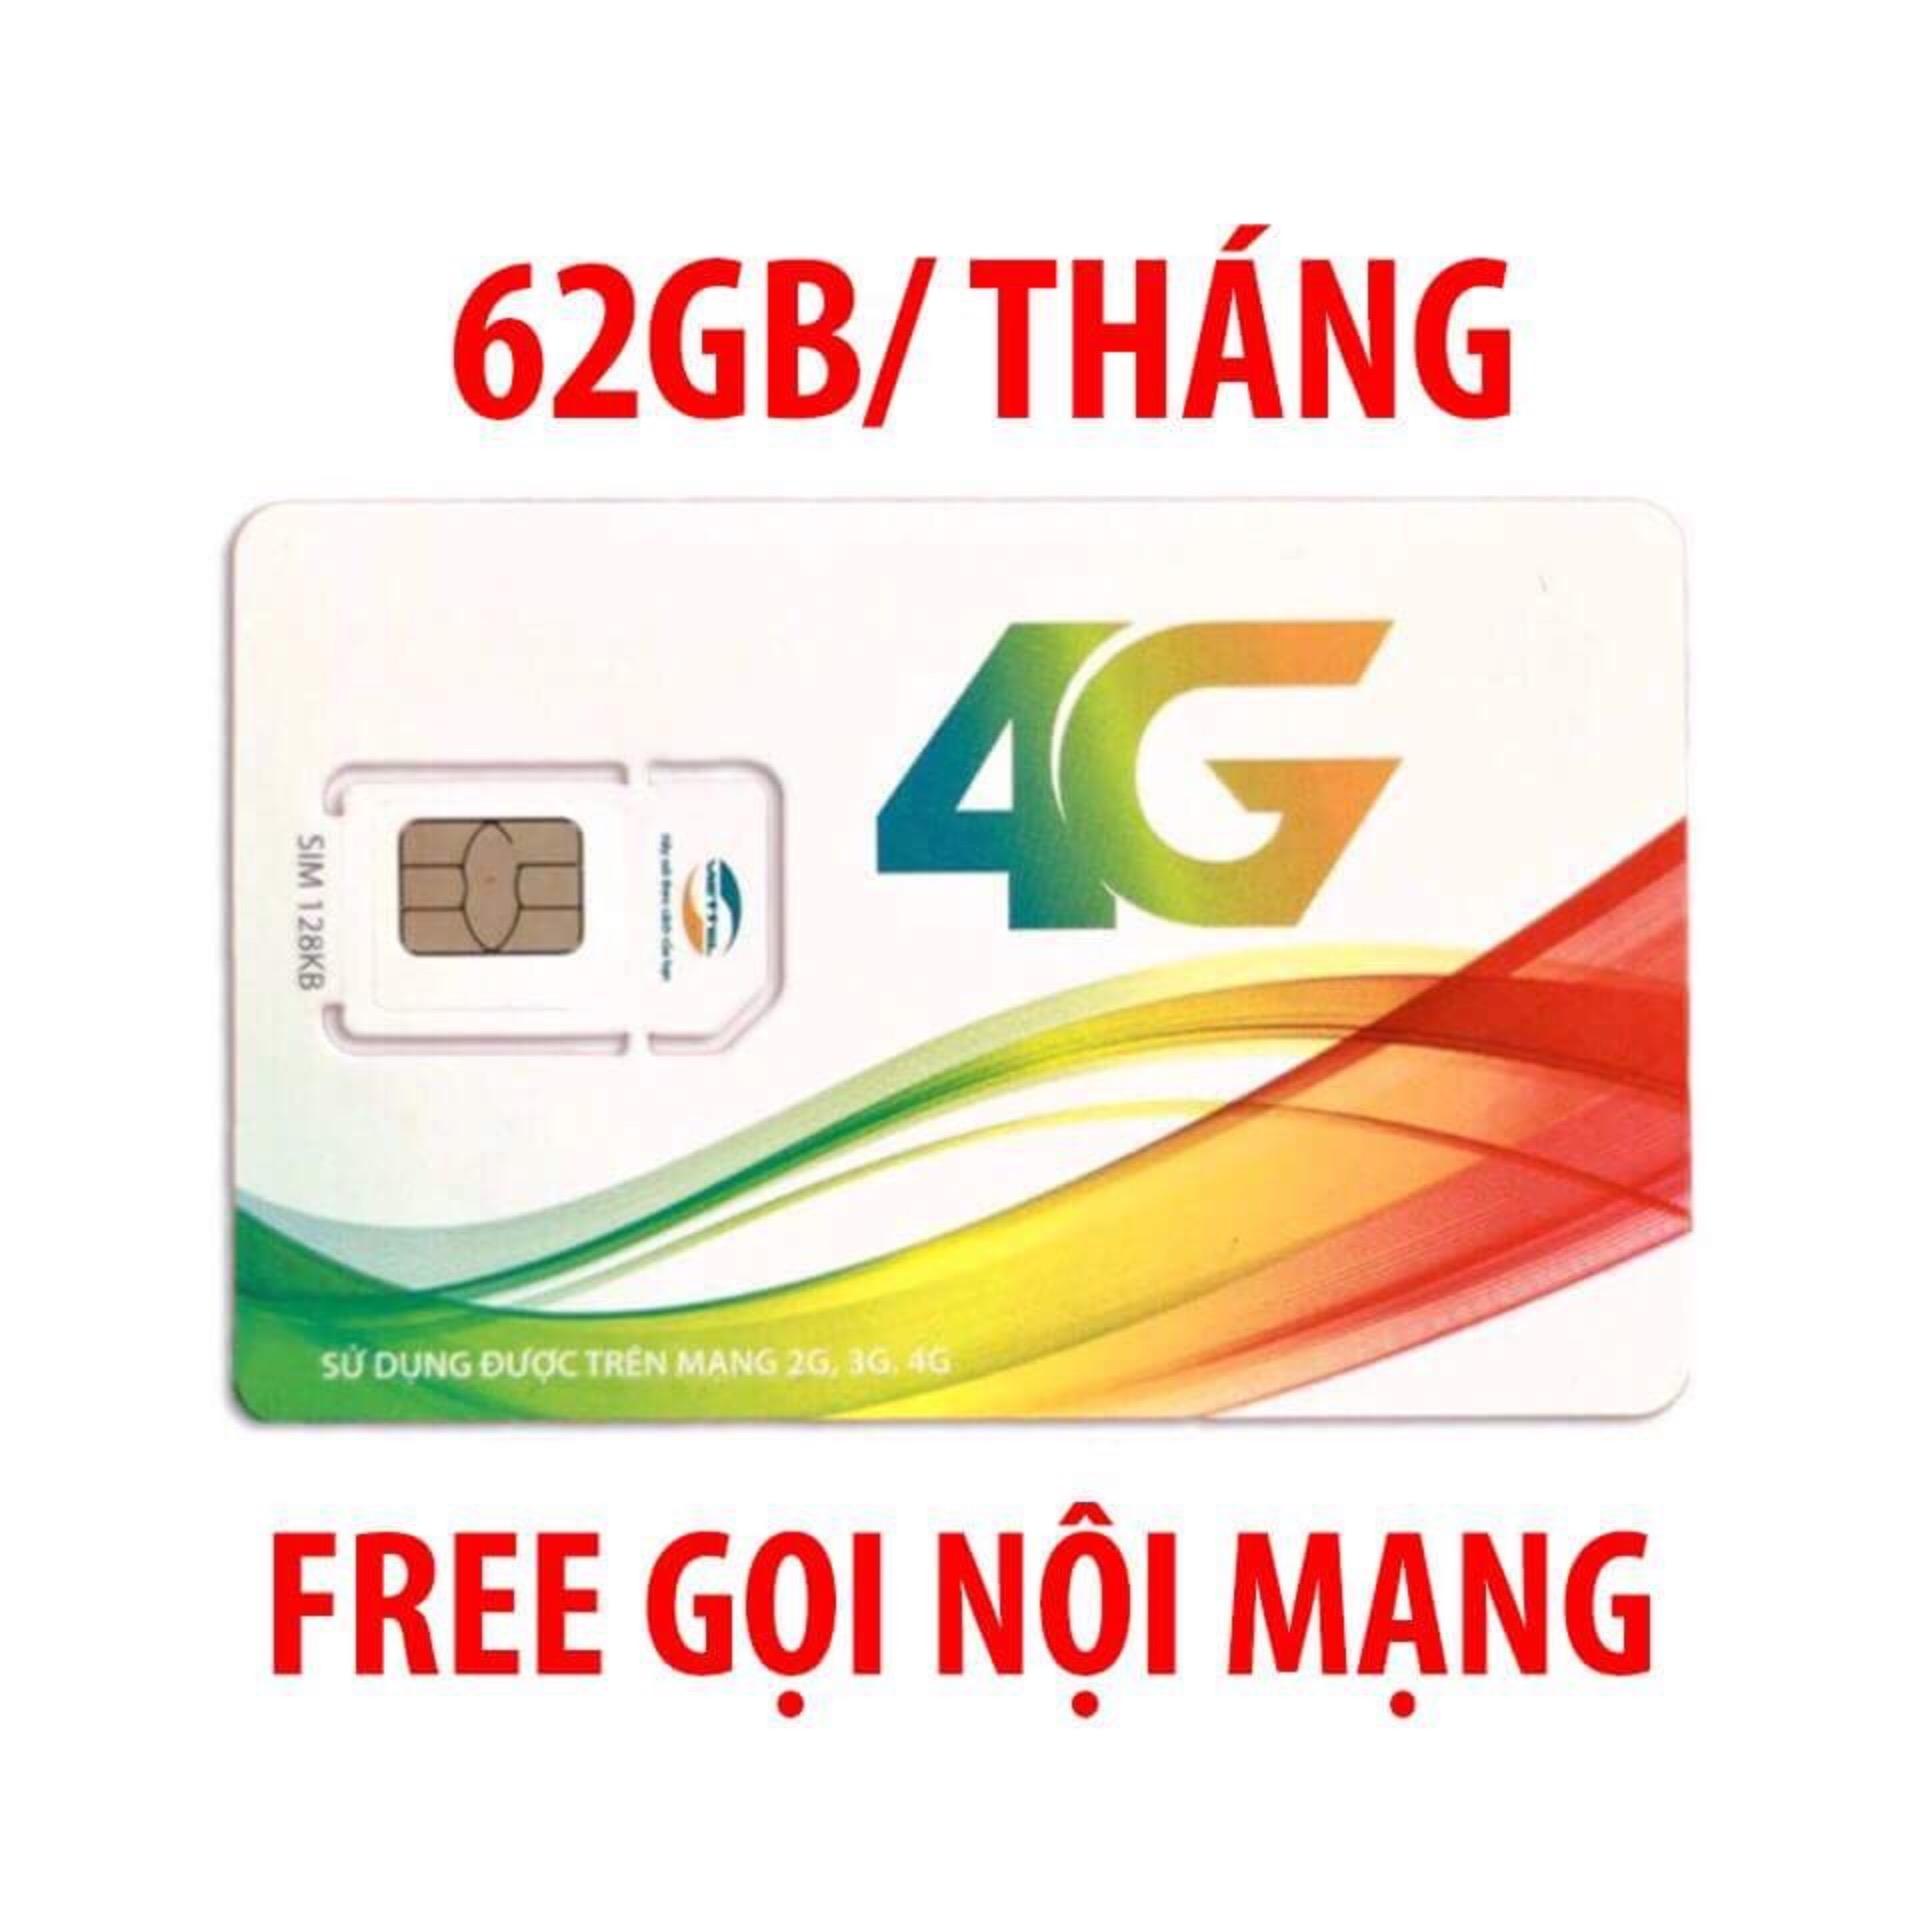 SIM 4G VIETTEL V90 miễn phí gọi nội mạng, tặng 62GB/THÁNG